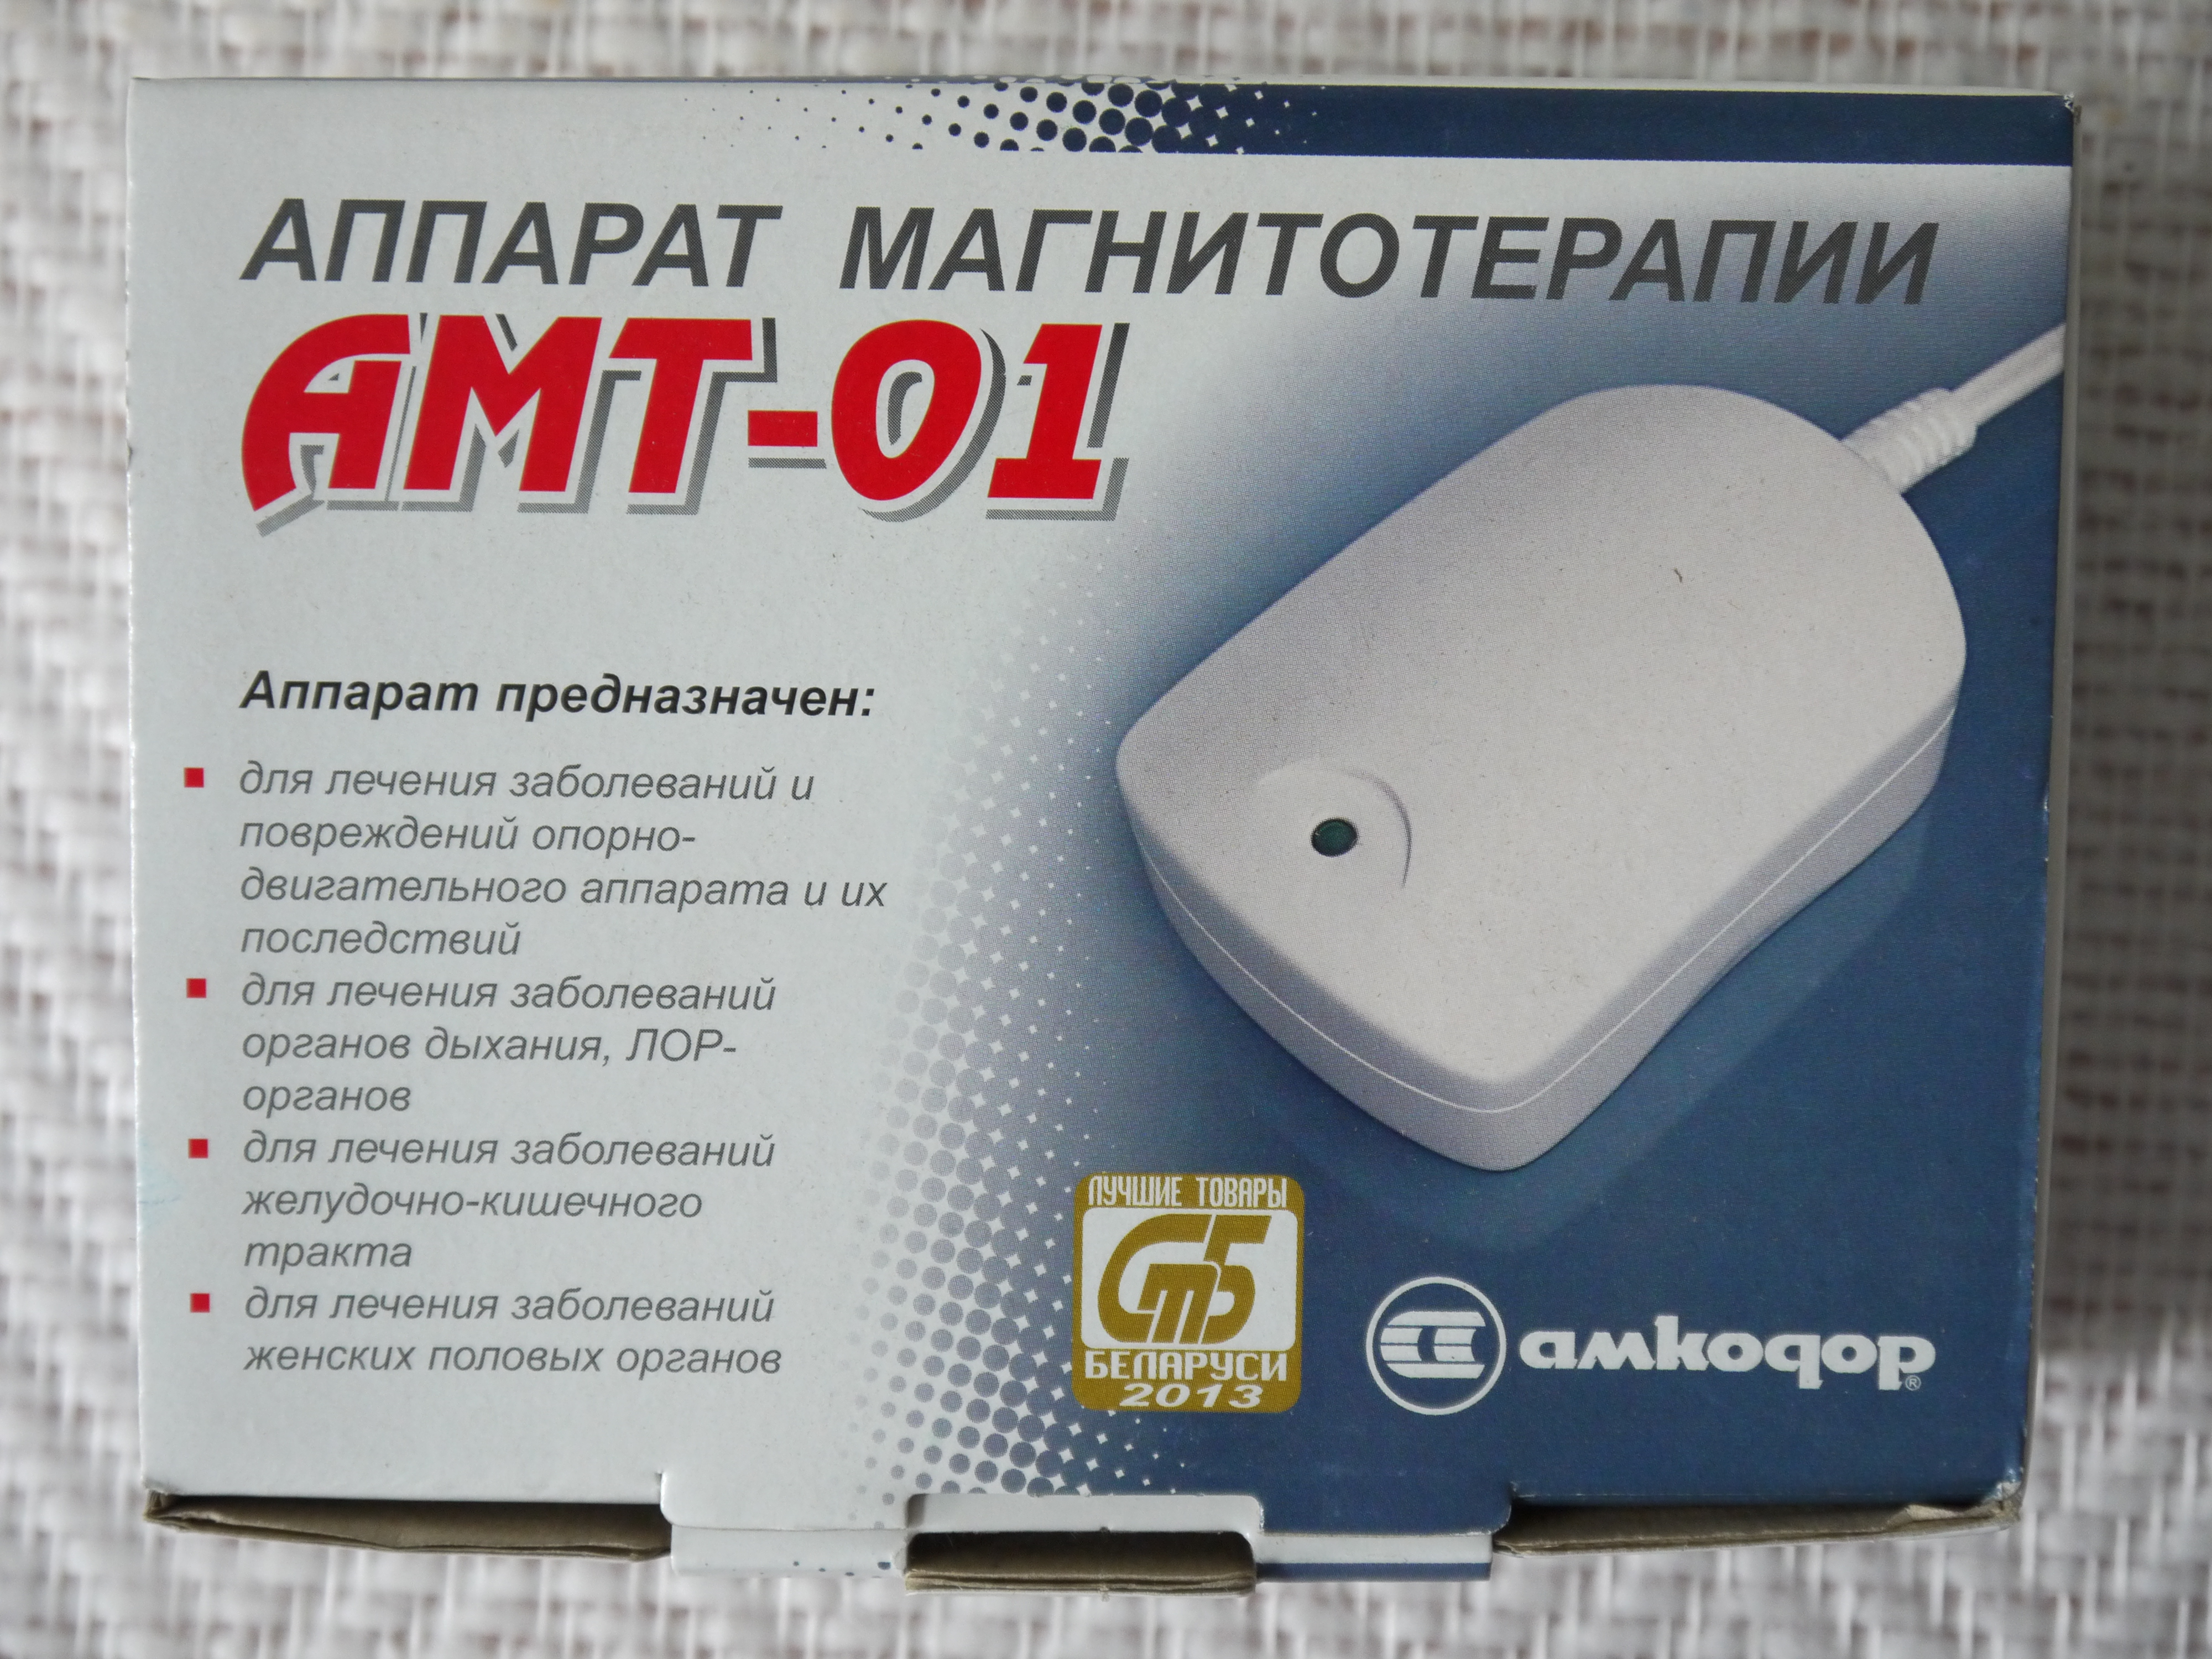 Аппарат амт купить. Аппарат Магнито терапии АМТ-01. Аппарат магнитотерапии АМТ-01 (Беларусь). Магнит Амкодор АМТ 01. Аппарат магнитотерапии переносной АМТ 01.